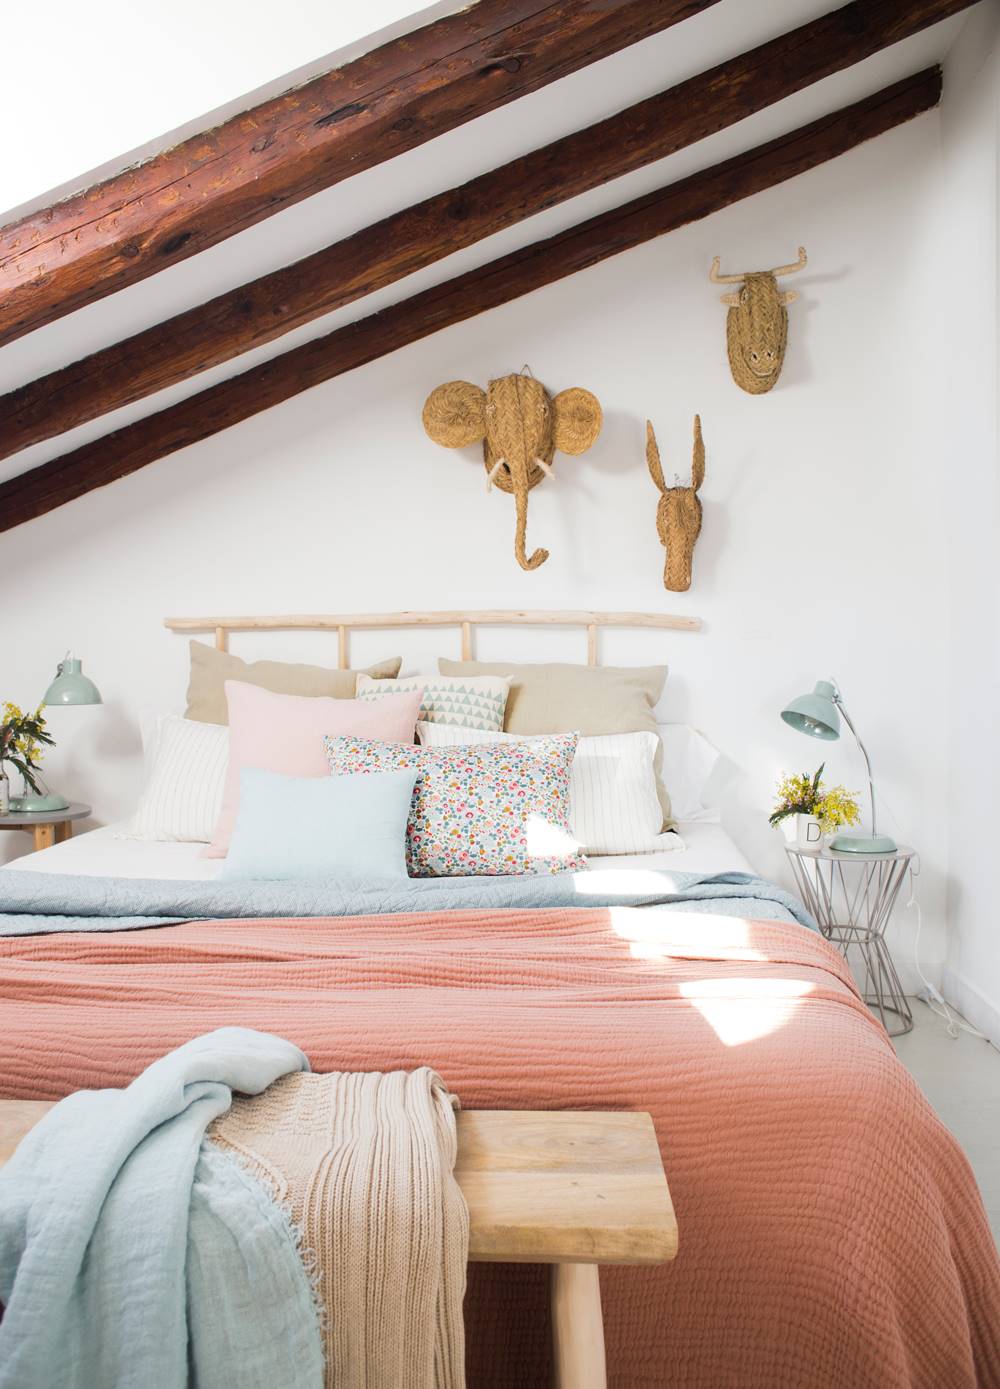 Dormitorio con cabecero de ratán natural y cabezas de animales de esparto en la pared.